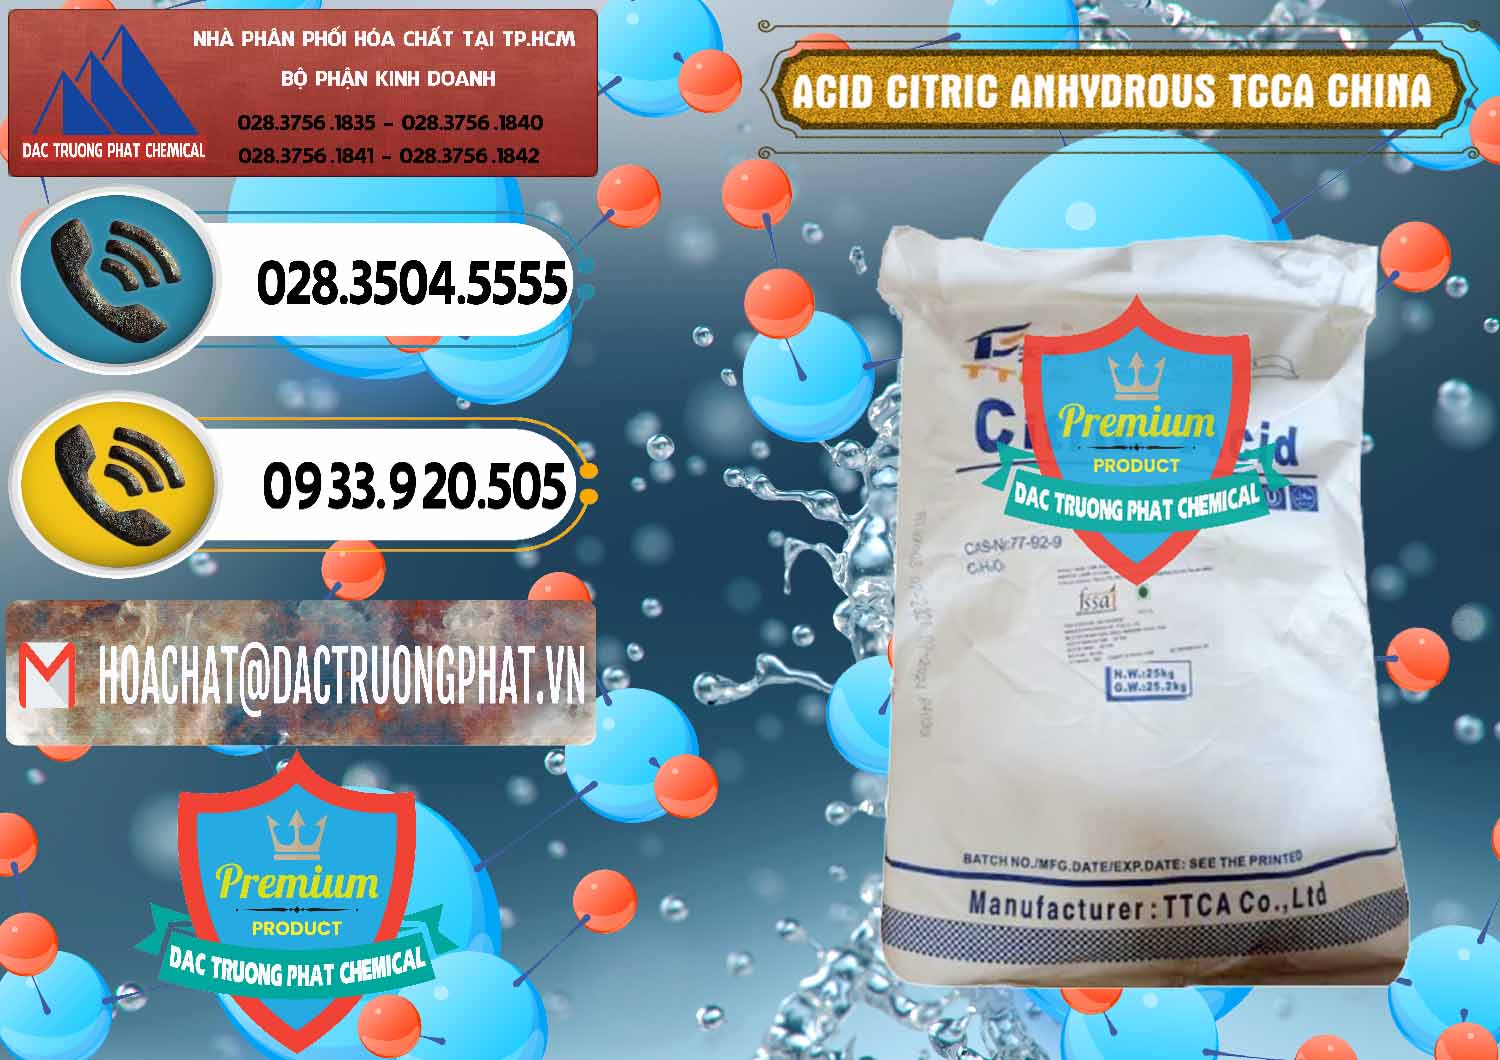 Cty nhập khẩu & bán Acid Citric - Axit Citric Anhydrous TCCA Trung Quốc China - 0442 - Nơi cung cấp - phân phối hóa chất tại TP.HCM - hoachatdetnhuom.vn